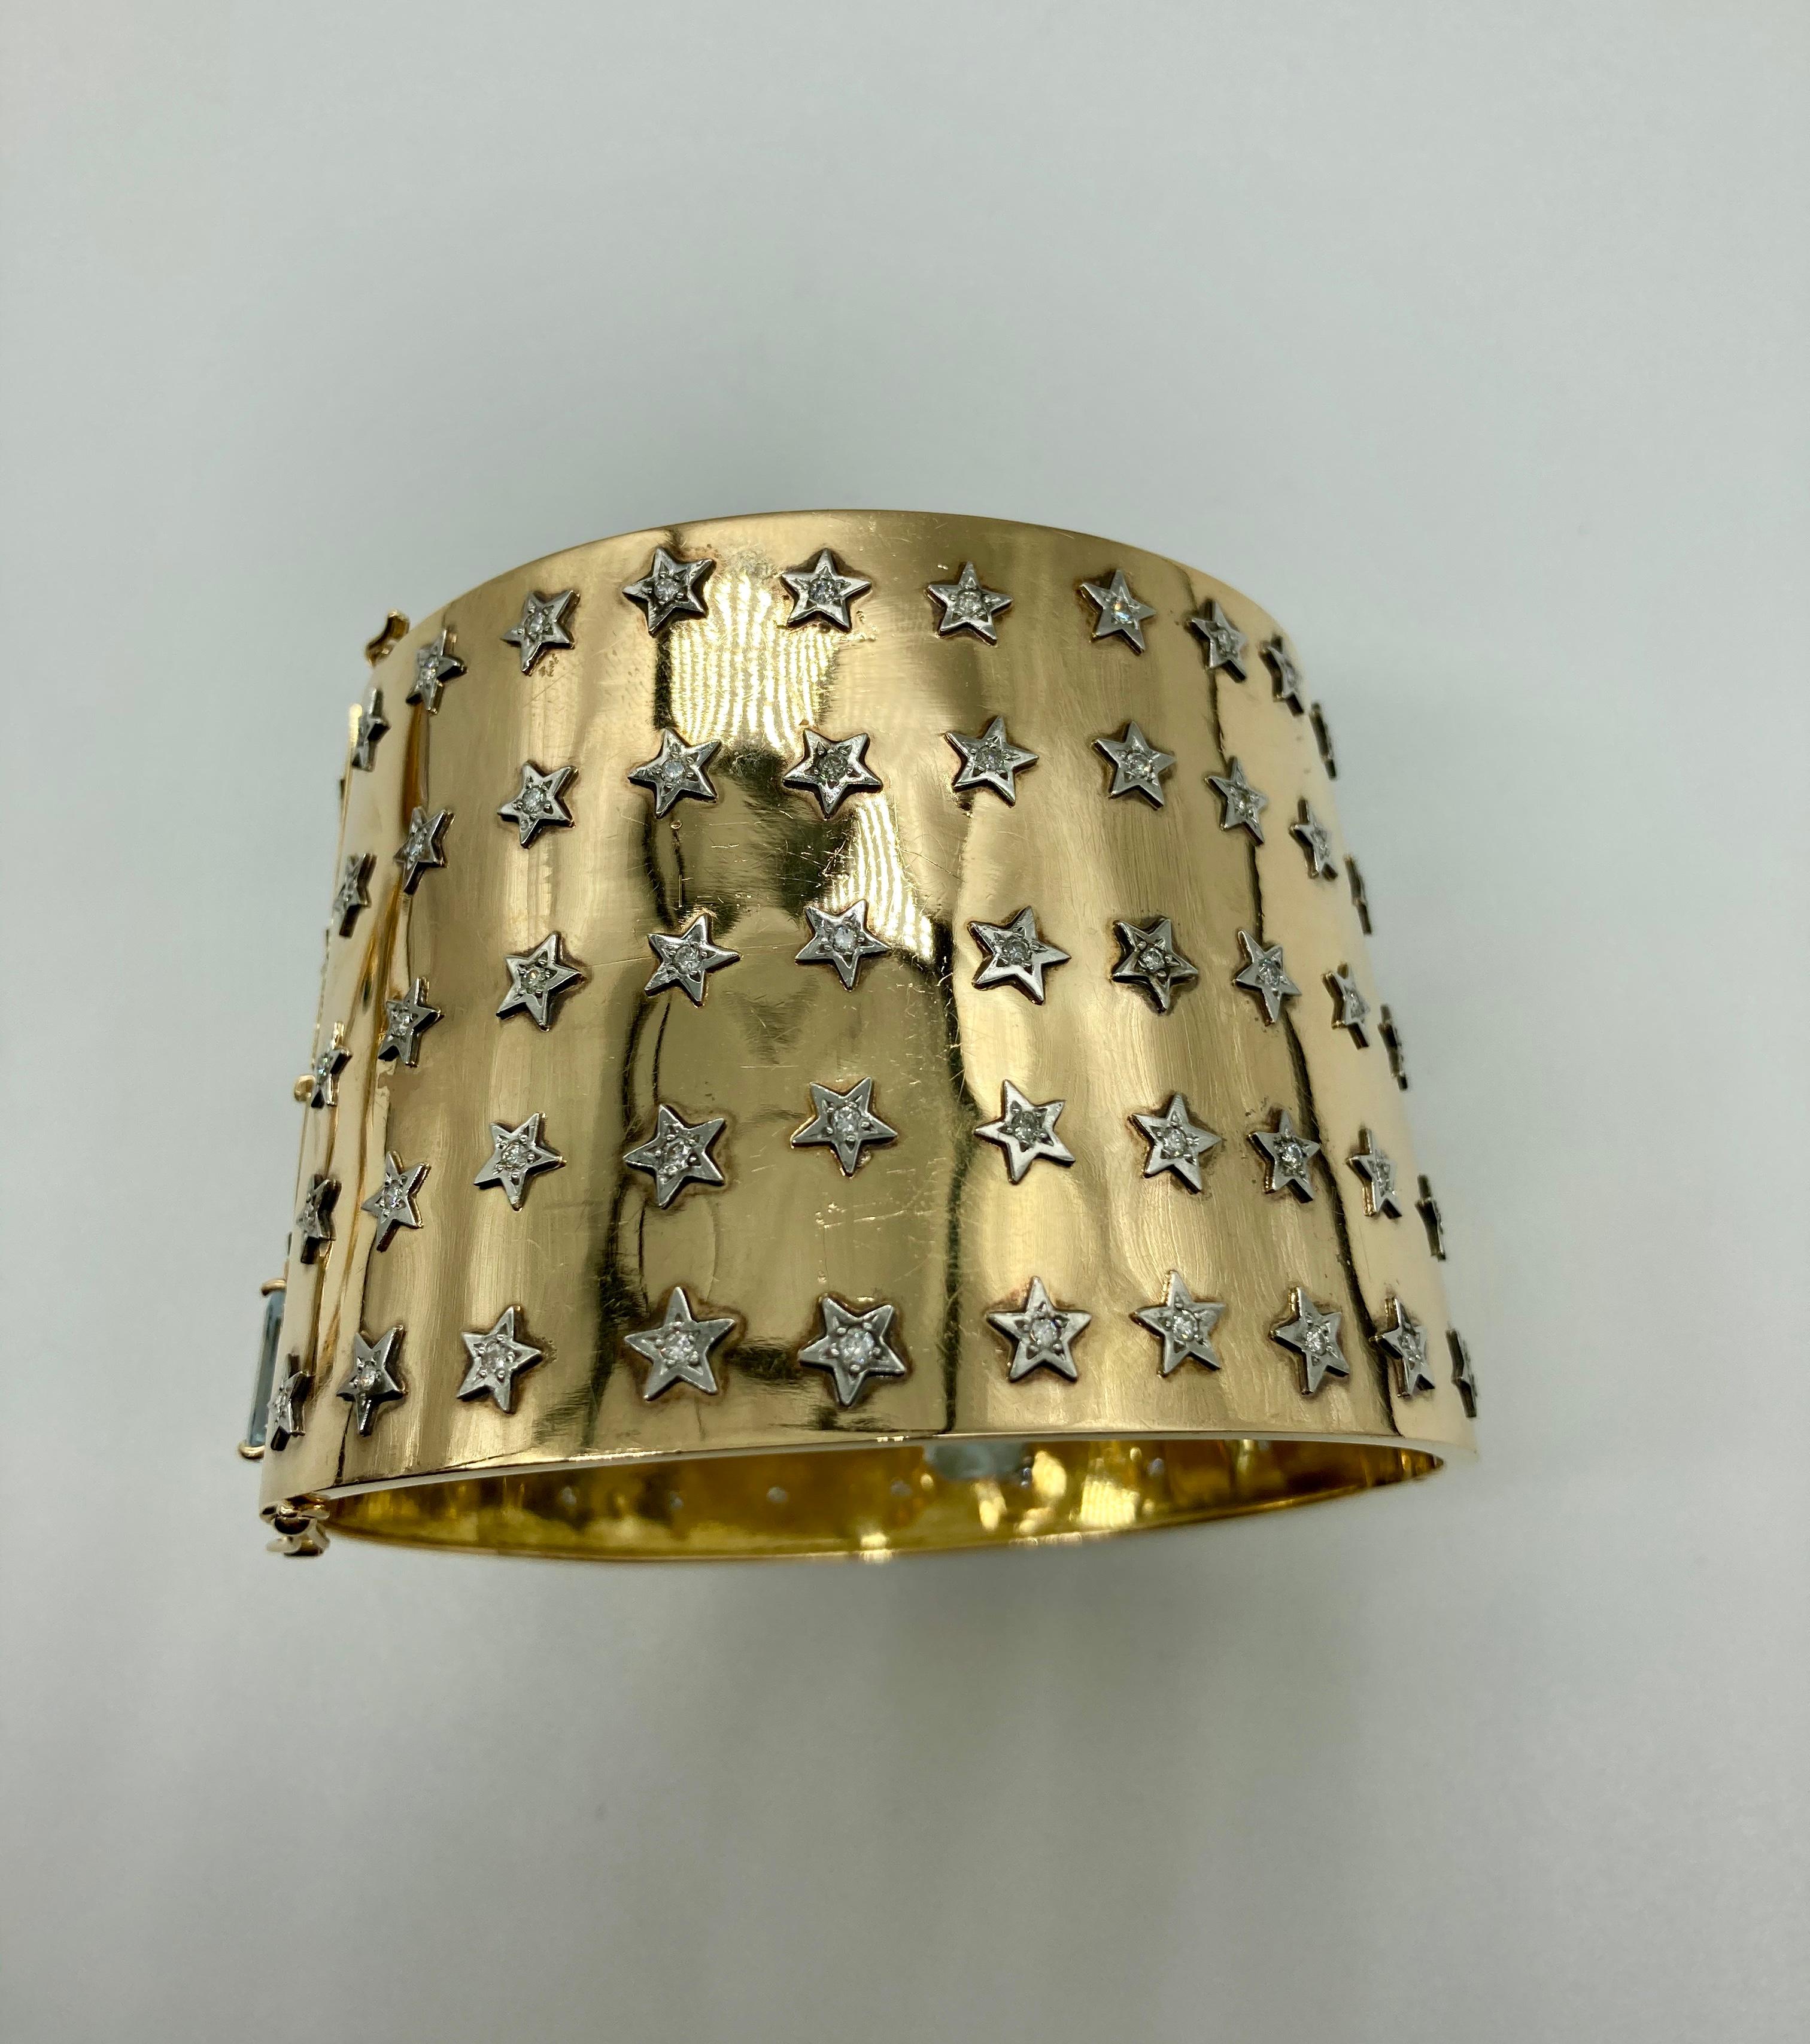 Un bracelet manchette rétro en or 18 carats agrémenté d'étoiles en diamants et rehaussé d'aigues-marines. Circa 1940s, marqué 750. Largeur approximative de 2,1 pouces, circonférence intérieure de 8 pouces.